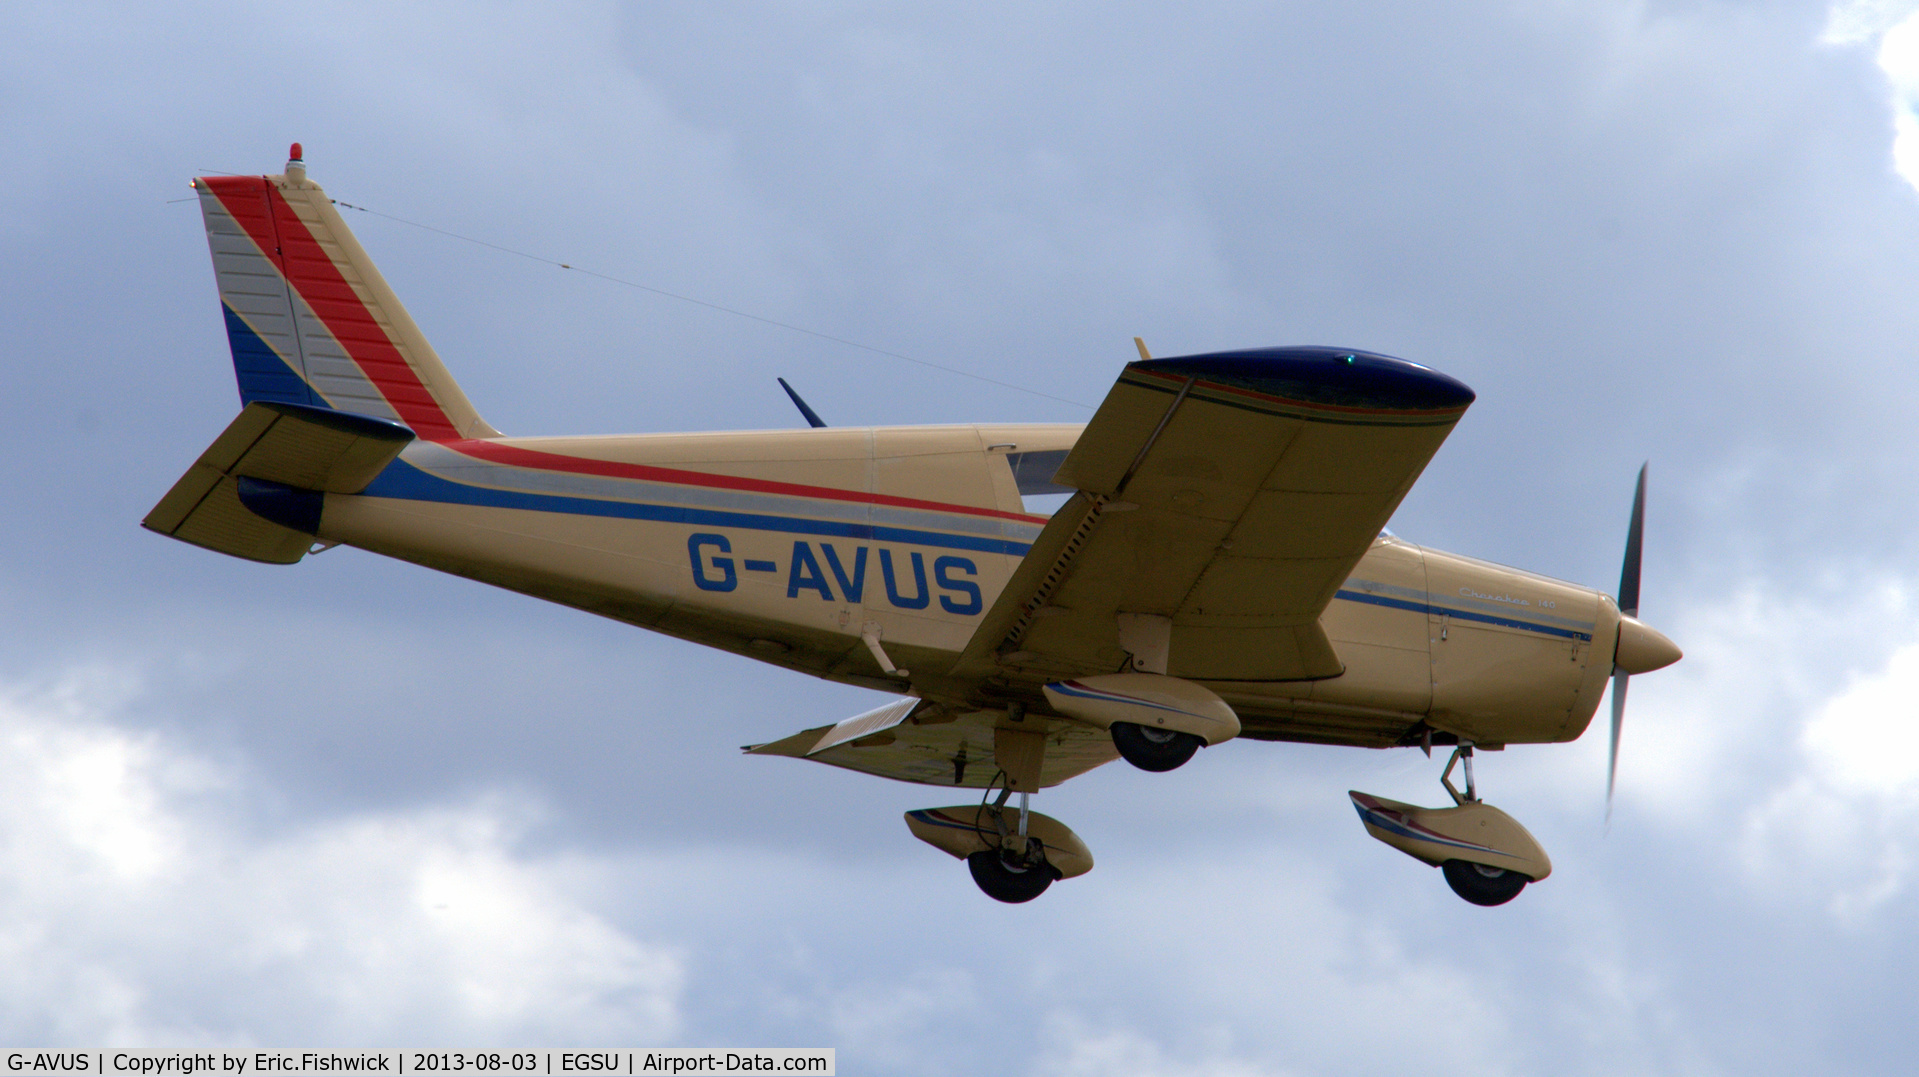 G-AVUS, 1967 Piper PA-28-140 Cherokee C/N 28-24065, 42. G-AVUS arriving at Duxford Airfield.